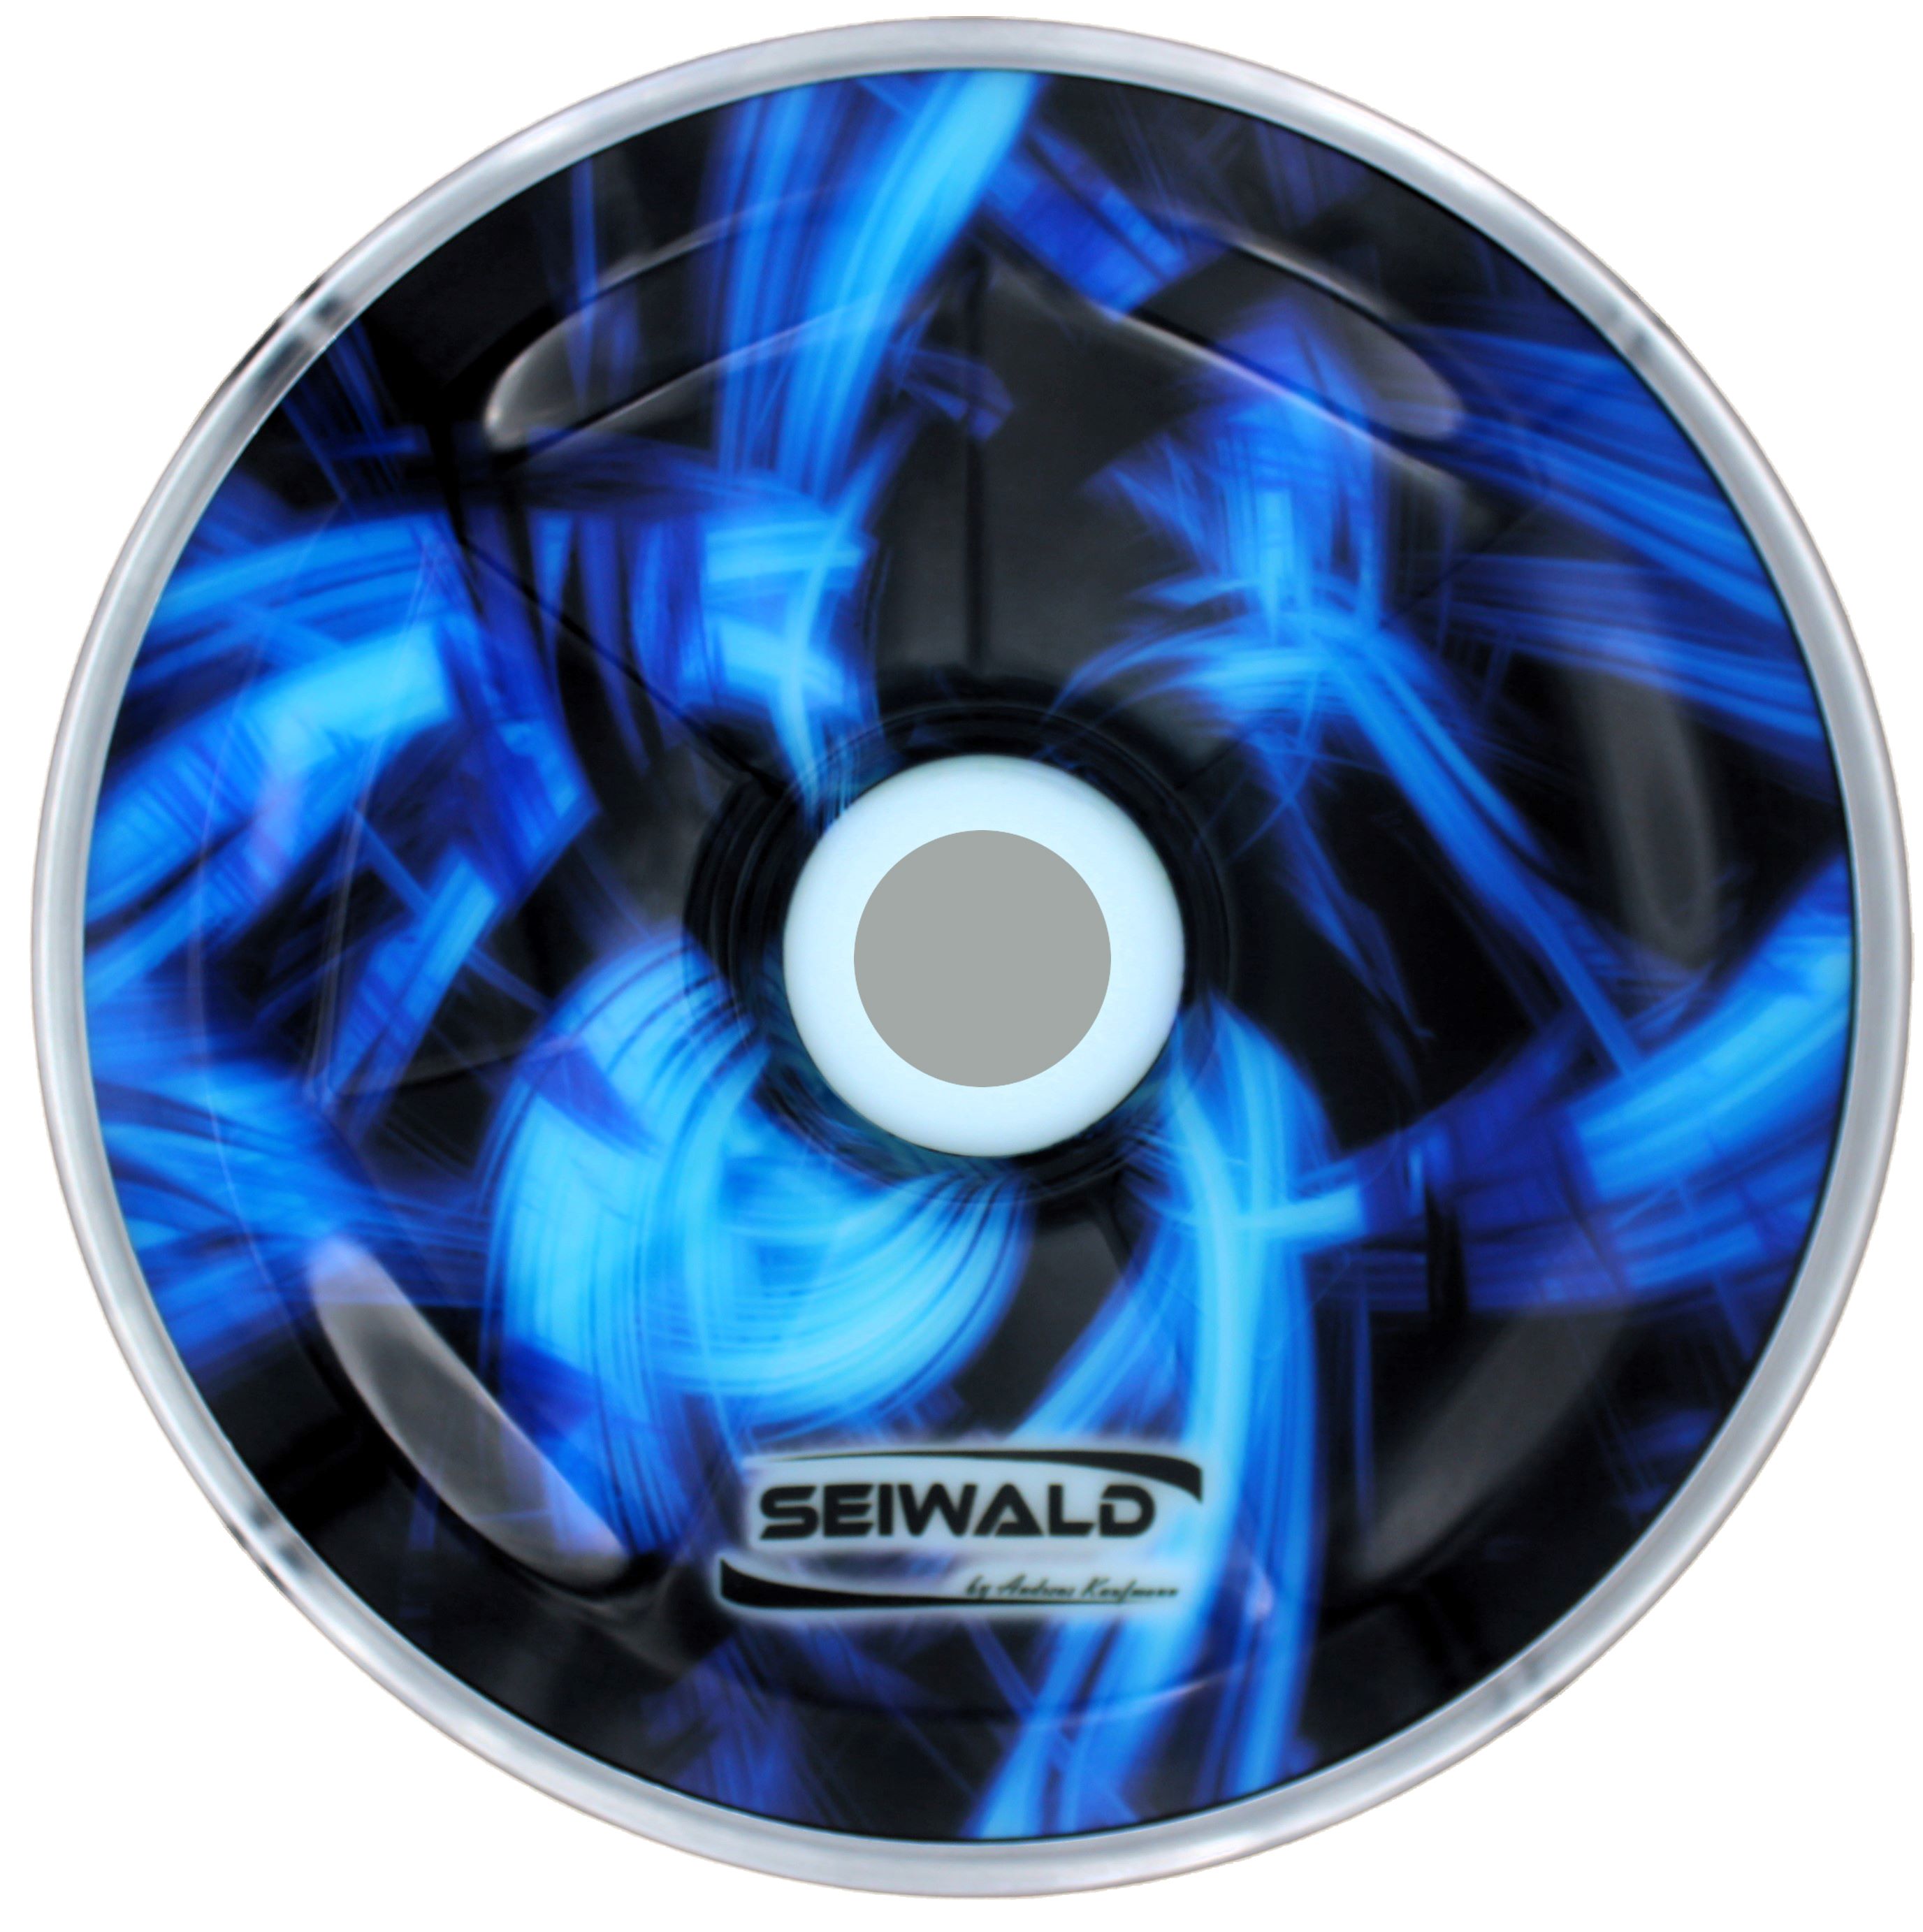 Seiwald Orion blau